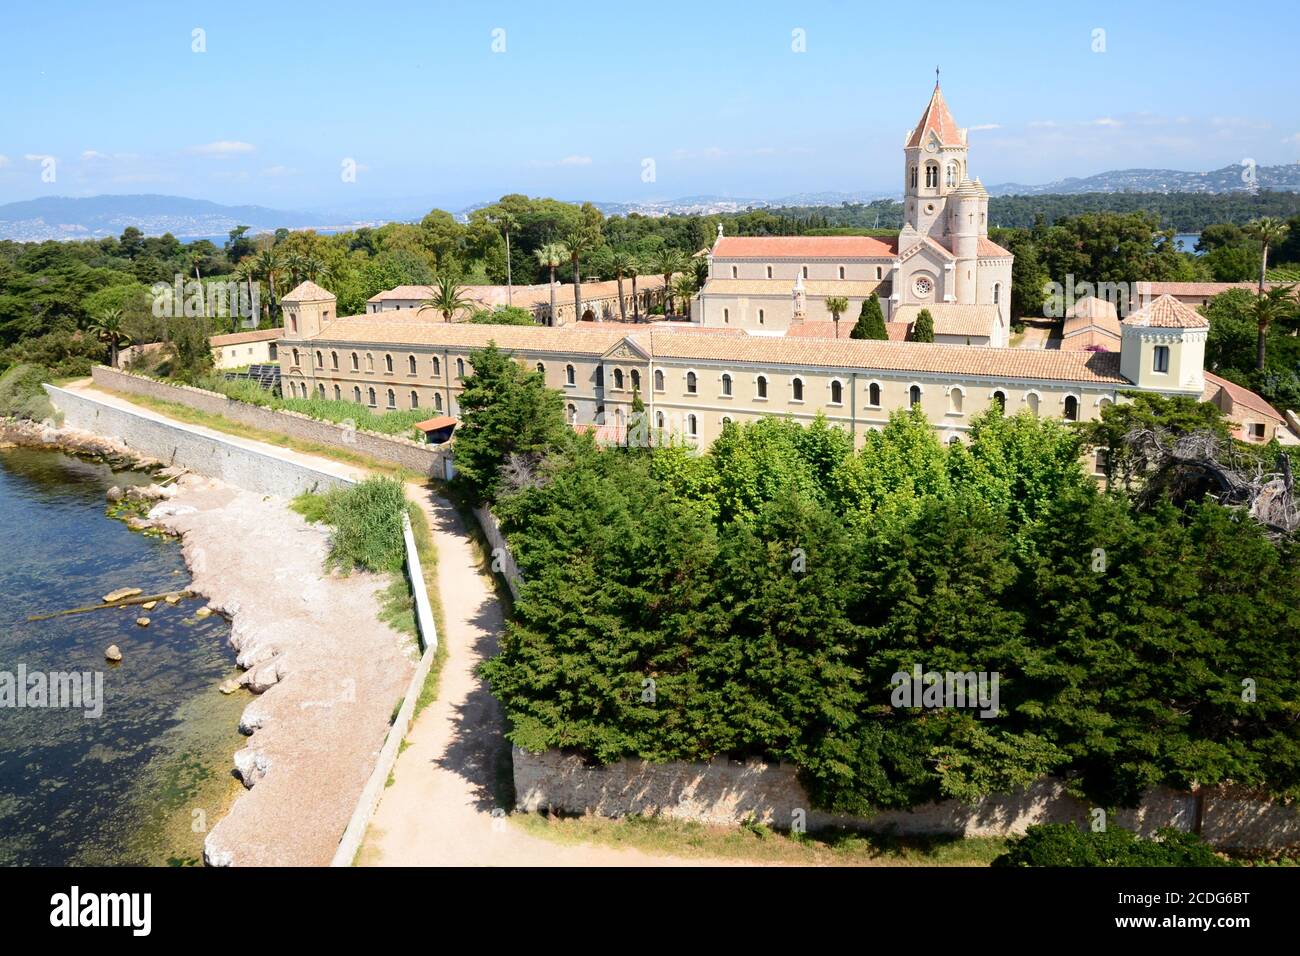 Francia, costa azzurra, Mar mediterraneo, sull'isola di Saint Honorat, nella baia di Cannes, un luogo tranquillo per il monastero dell'abbazia di Lerins. Foto Stock